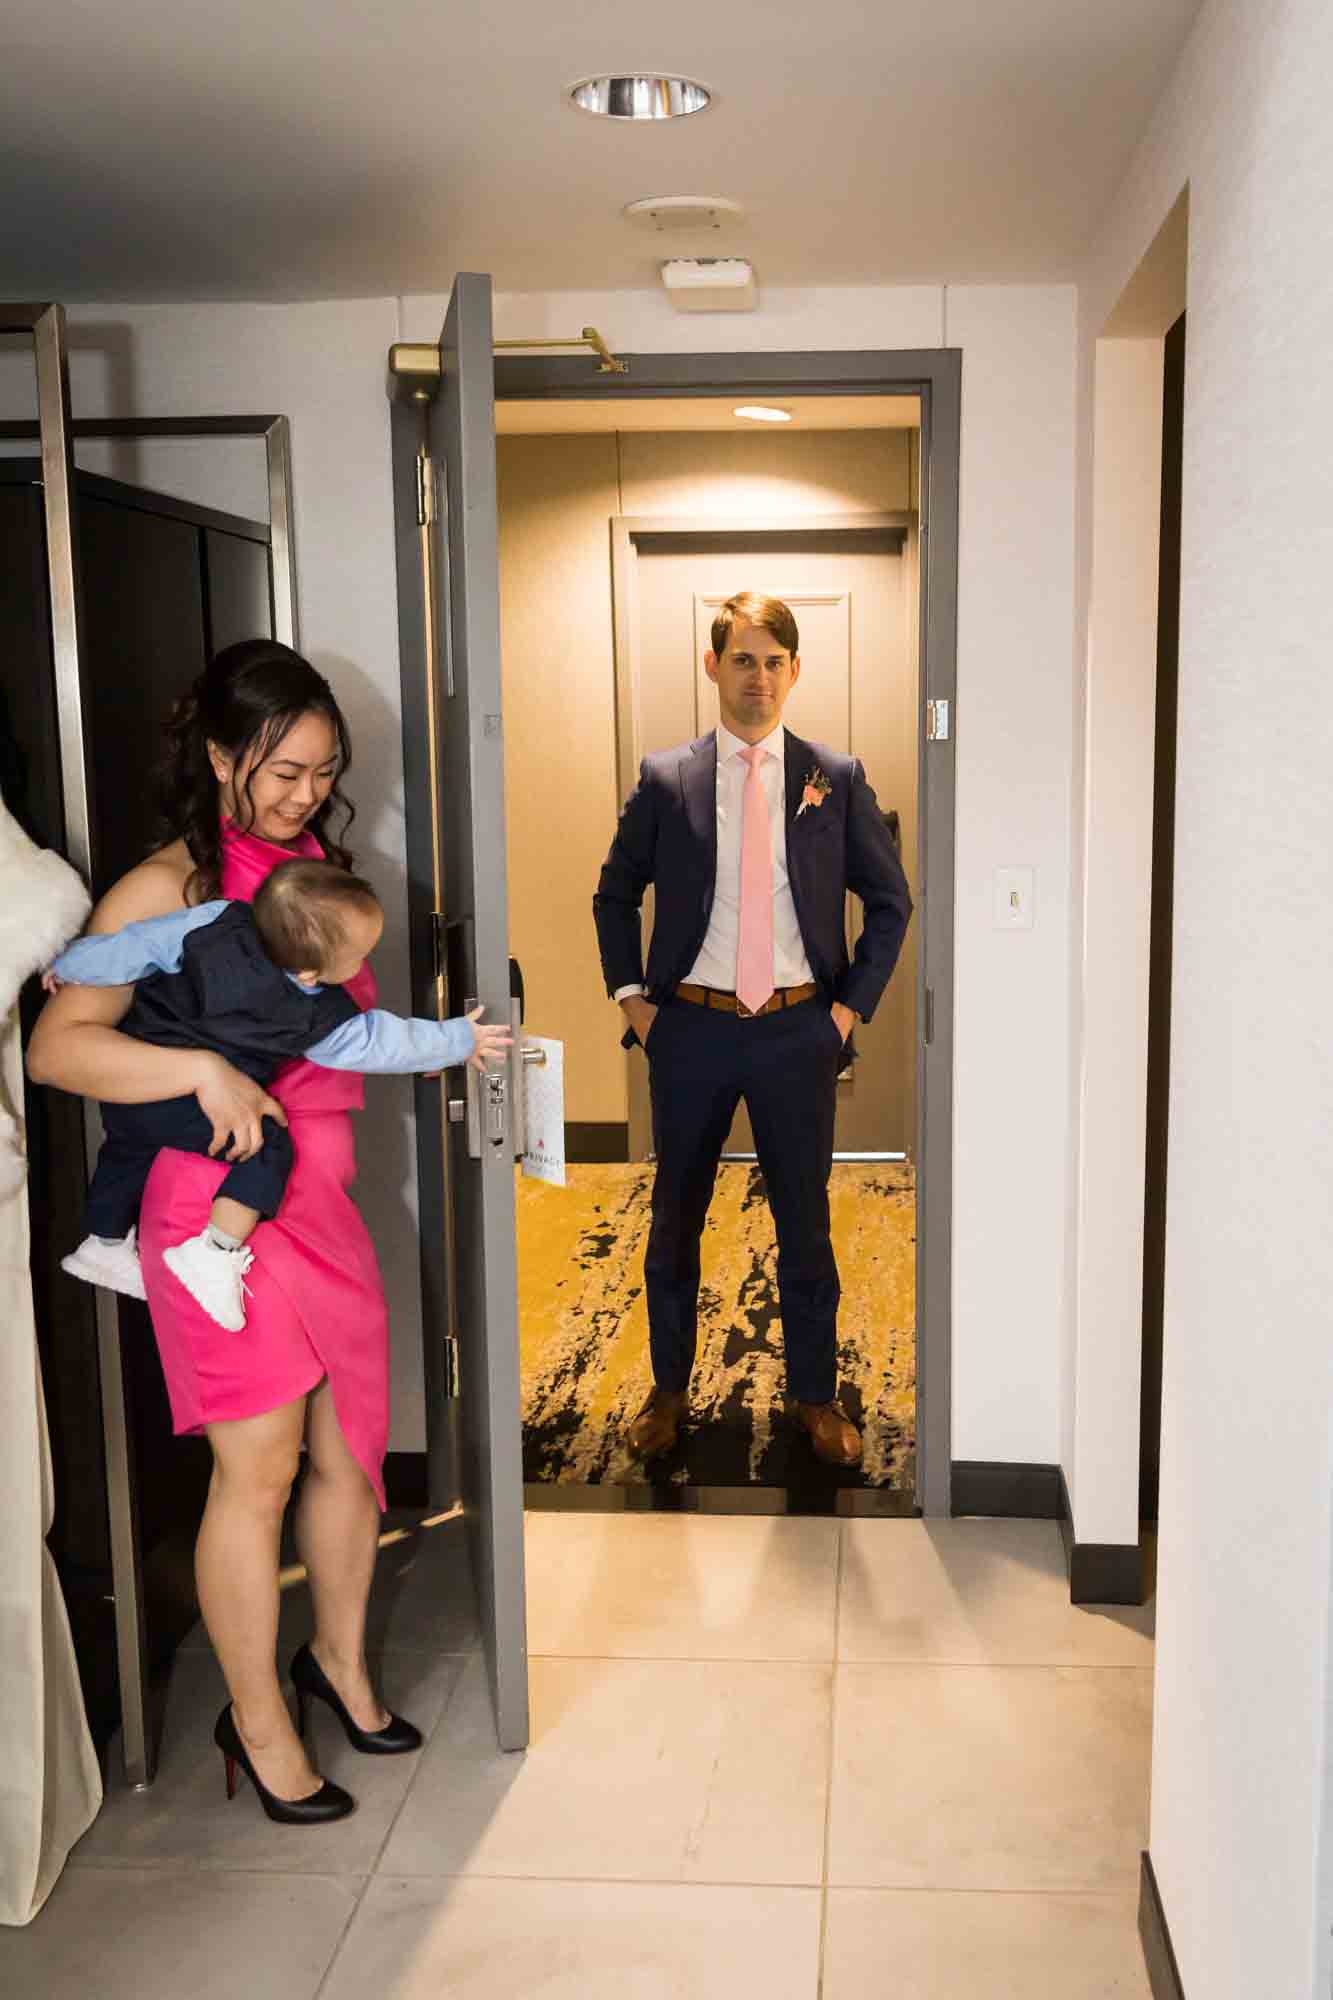 Little boy opening hotel room door for groom